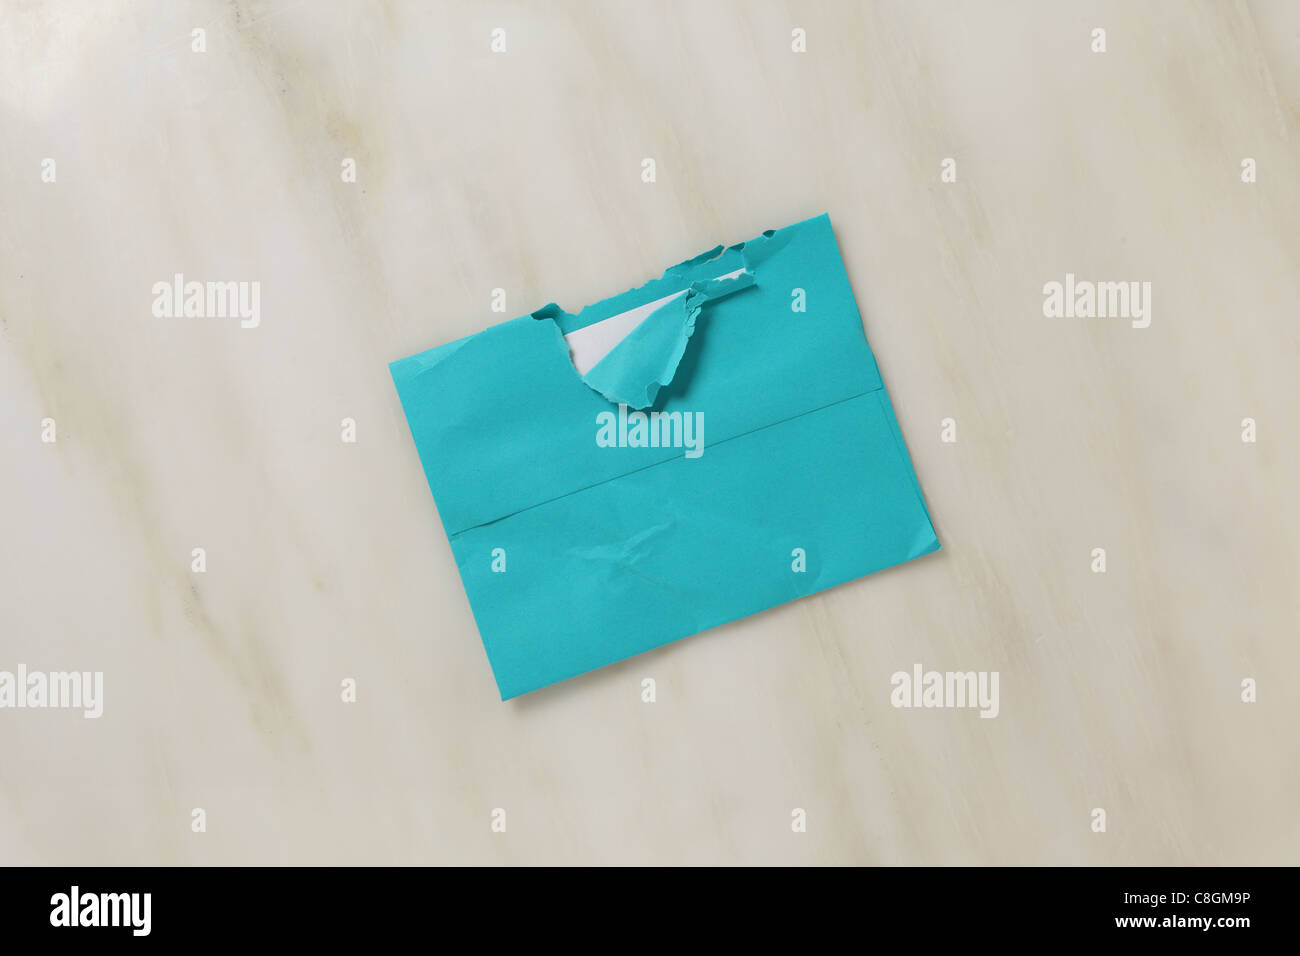 Un employé et légèrement déchiré l'enveloppe postal ouvert sur une surface en marbre de couleur bleu sarcelle lumineux envelope Banque D'Images